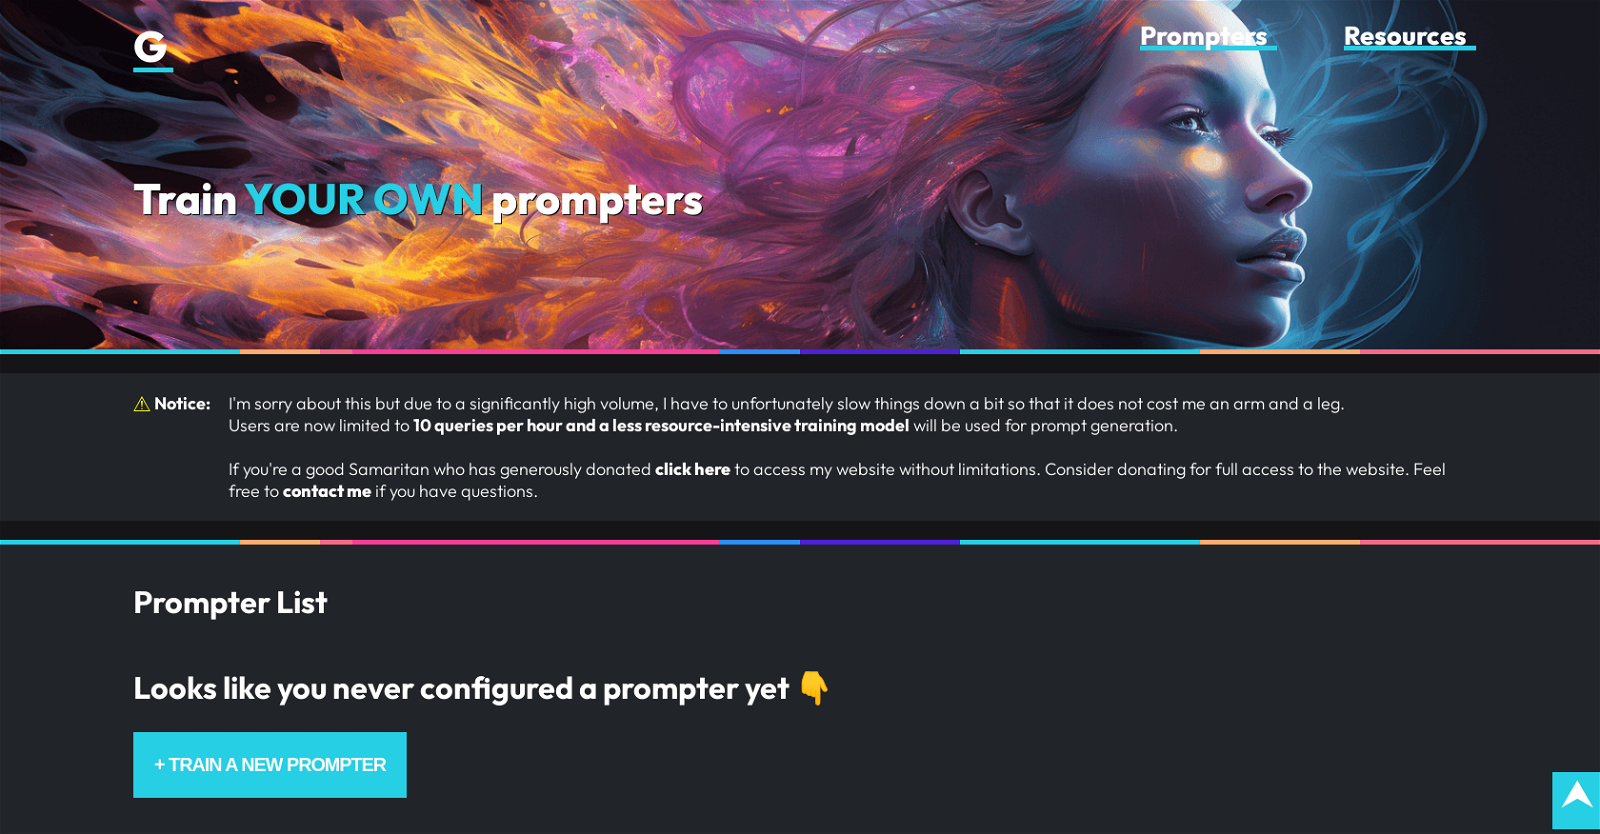 G-Prompter website